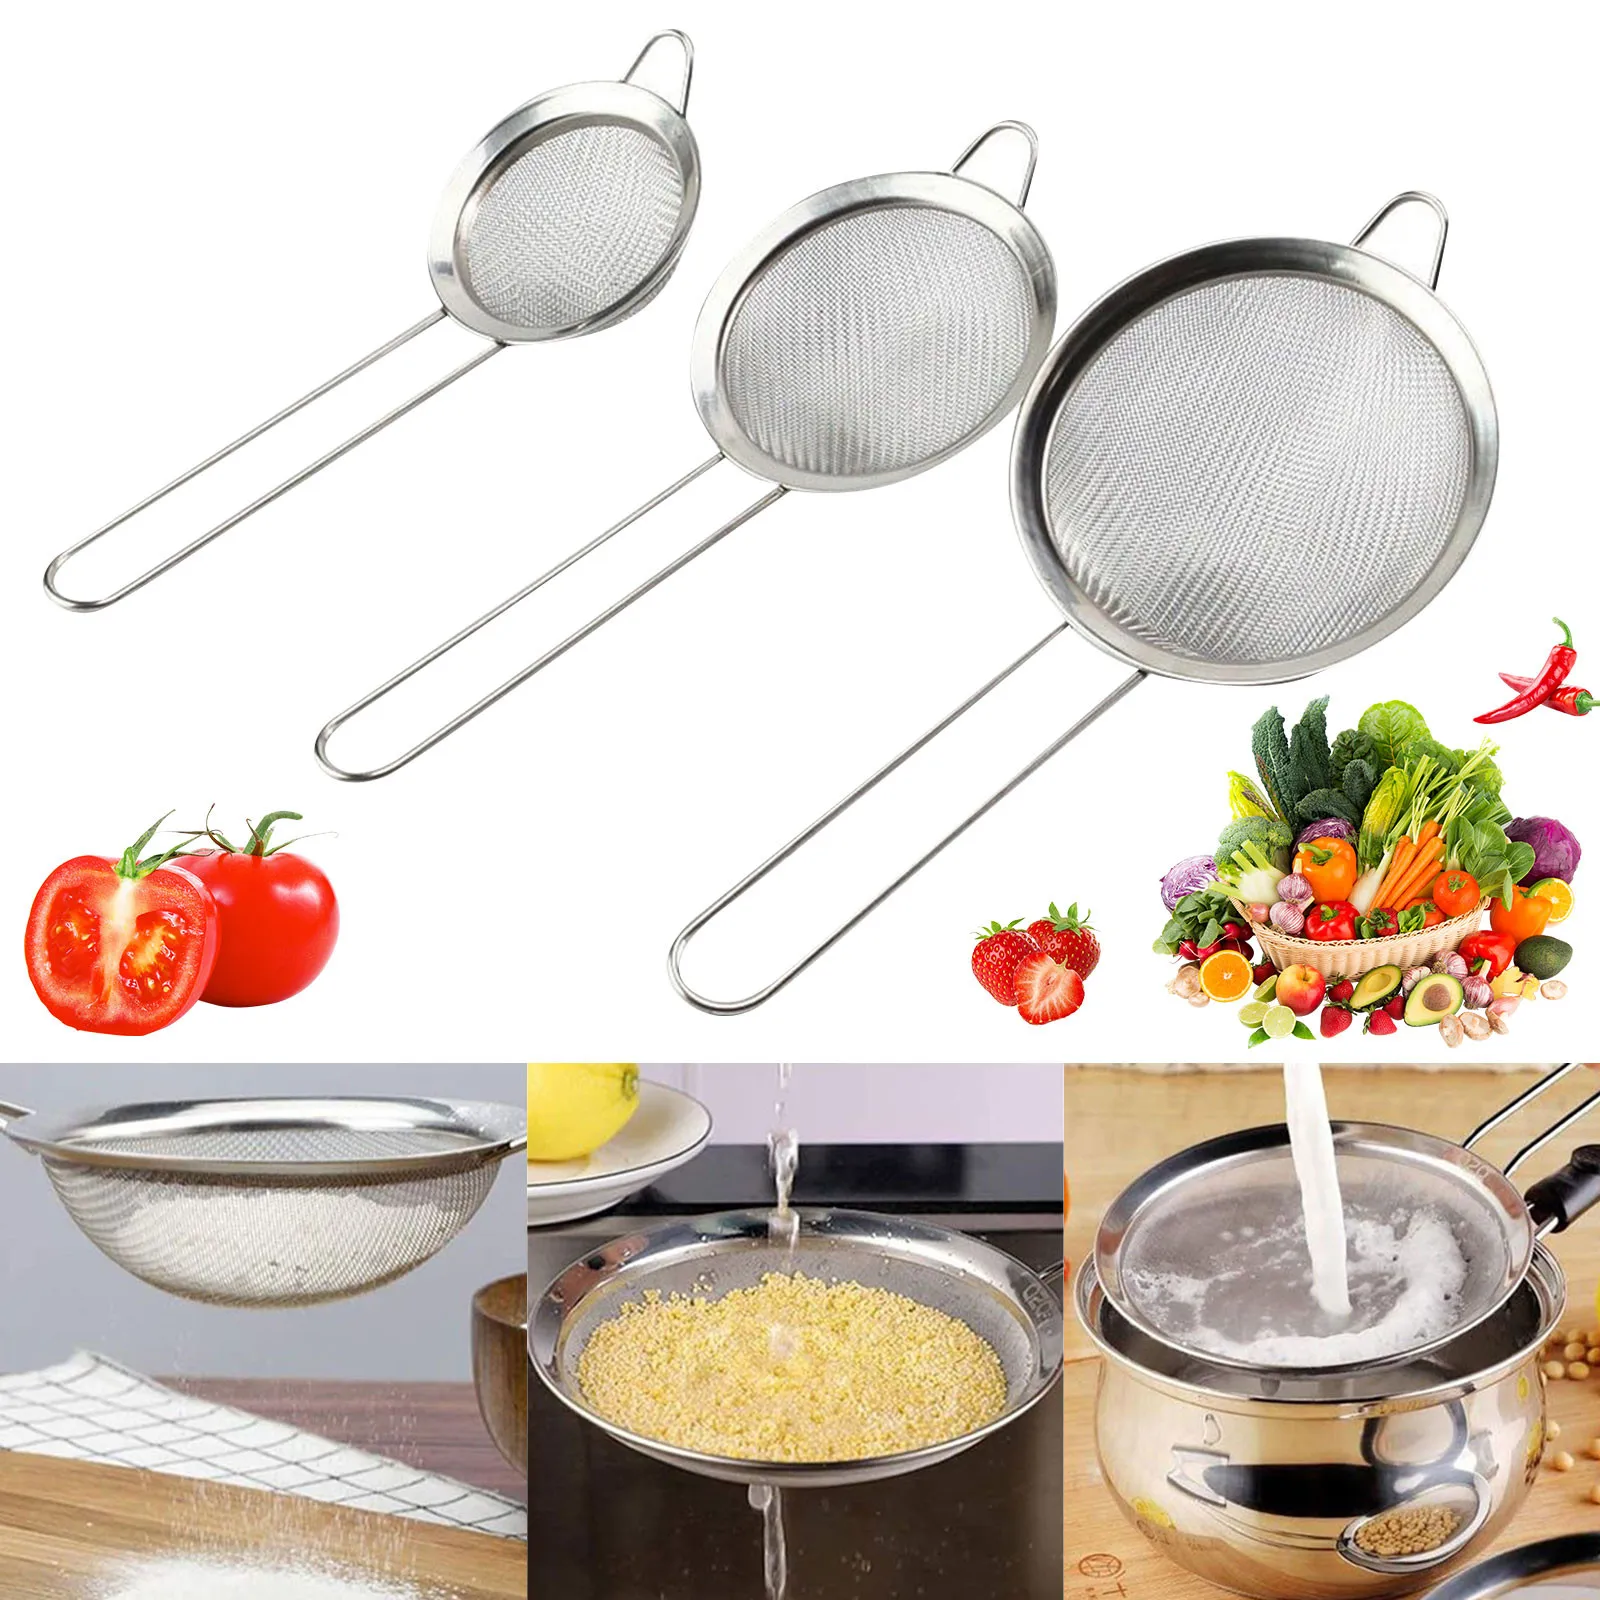 

3pcs/Set Stainless Steel Wire Fine Oil Strainer Flour Colander Sieve Baking Tools Kitchen Accessories кухонные принадлености